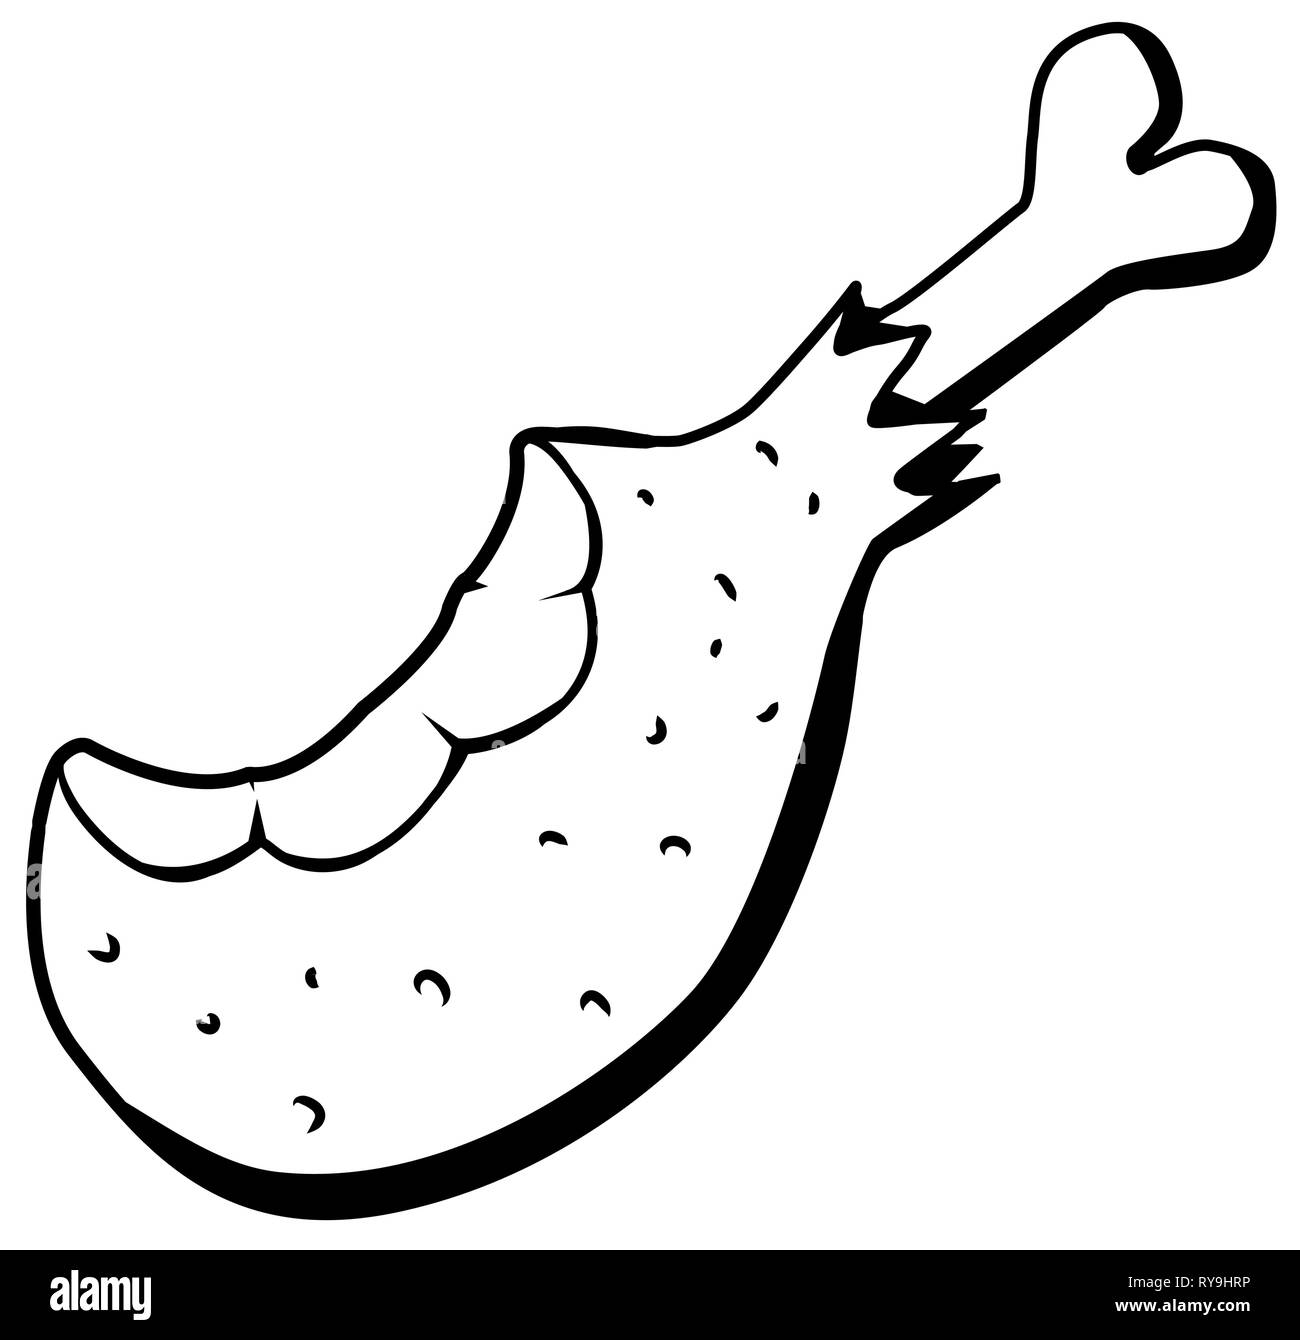 Cuisse de poulet Viande alimentaire cartoon dessin, scénario, horizontal, sur fond blanc Illustration de Vecteur